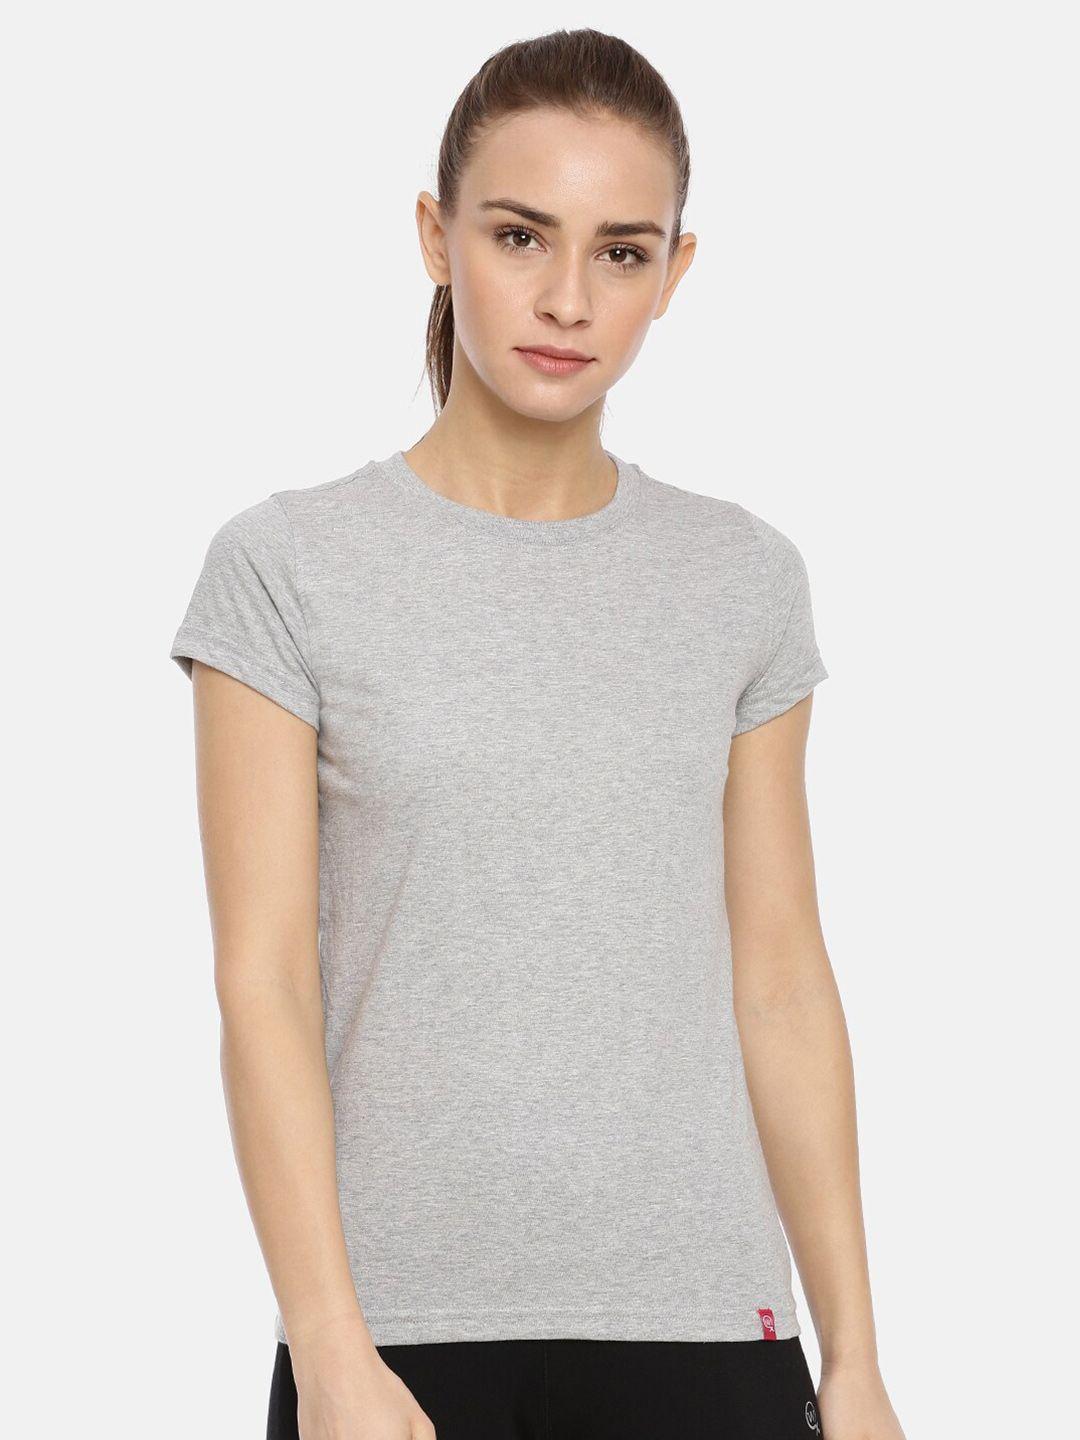 macrowoman w-series cotton t-shirt